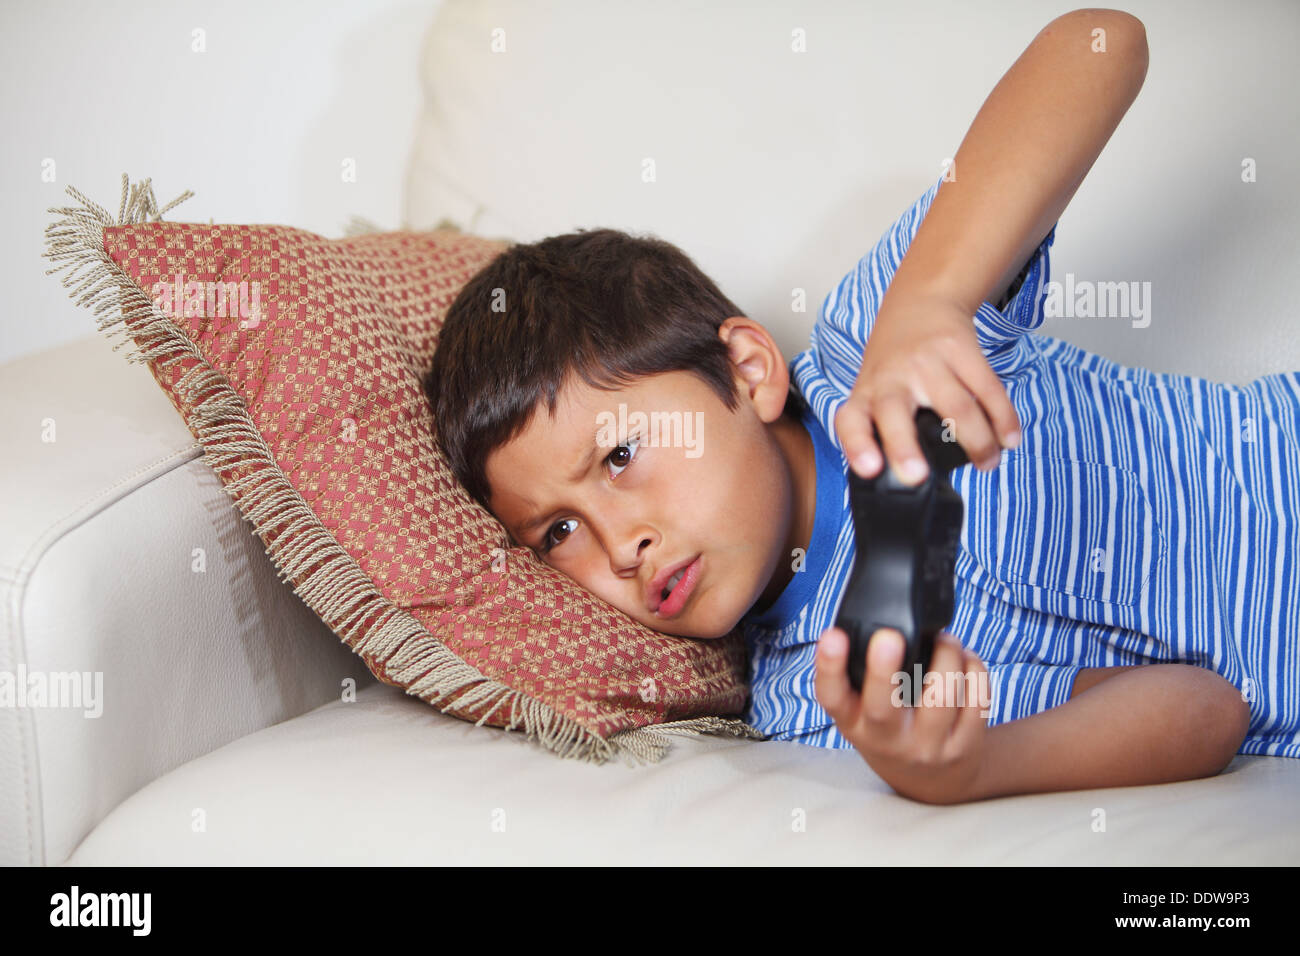 Jeune garçon à jouer à jeu en relxing sur le canapé Banque D'Images